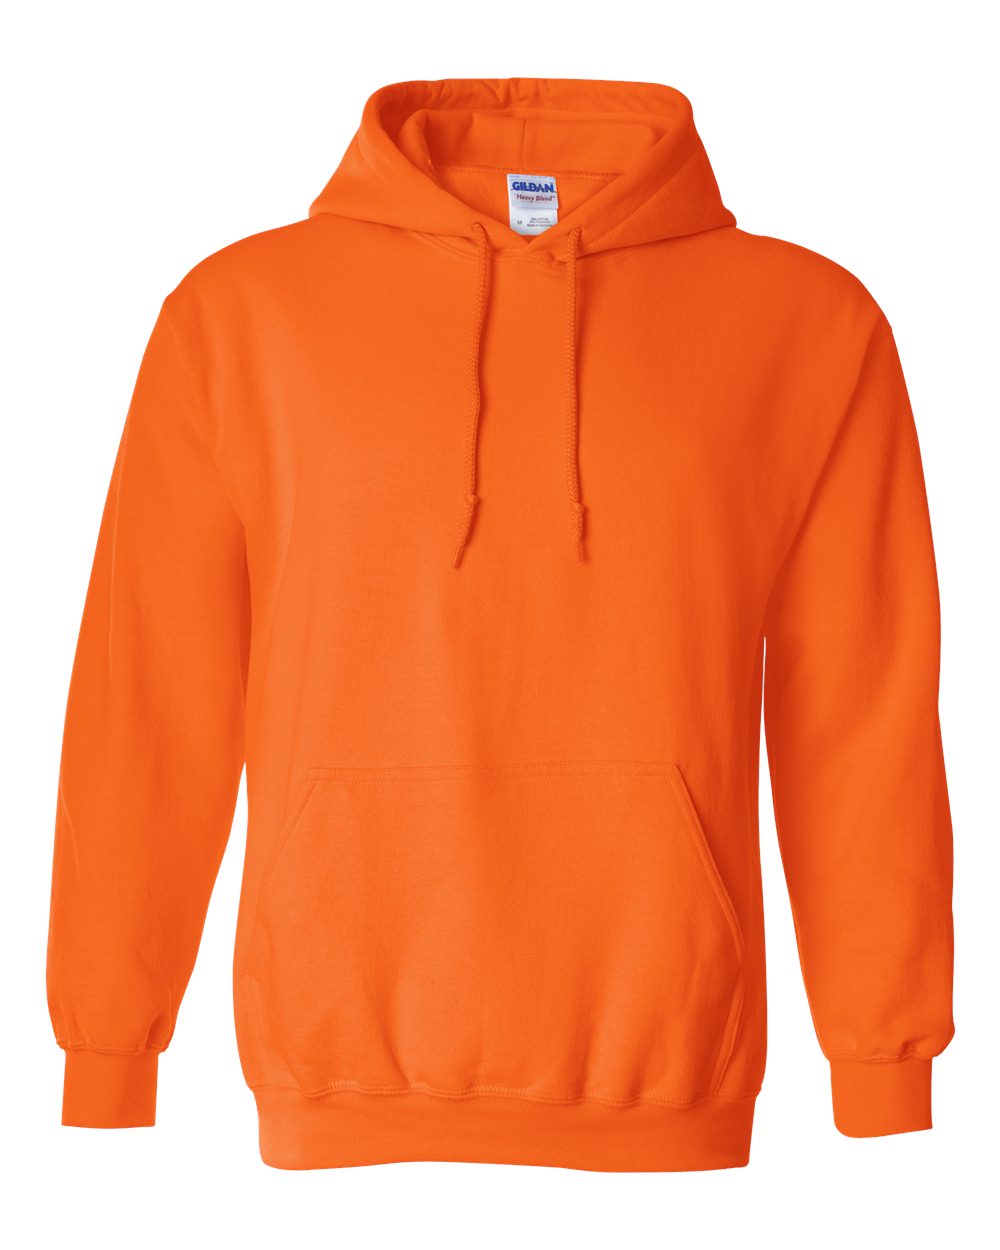 Gildan Hoodie (18500) in Safety Orange